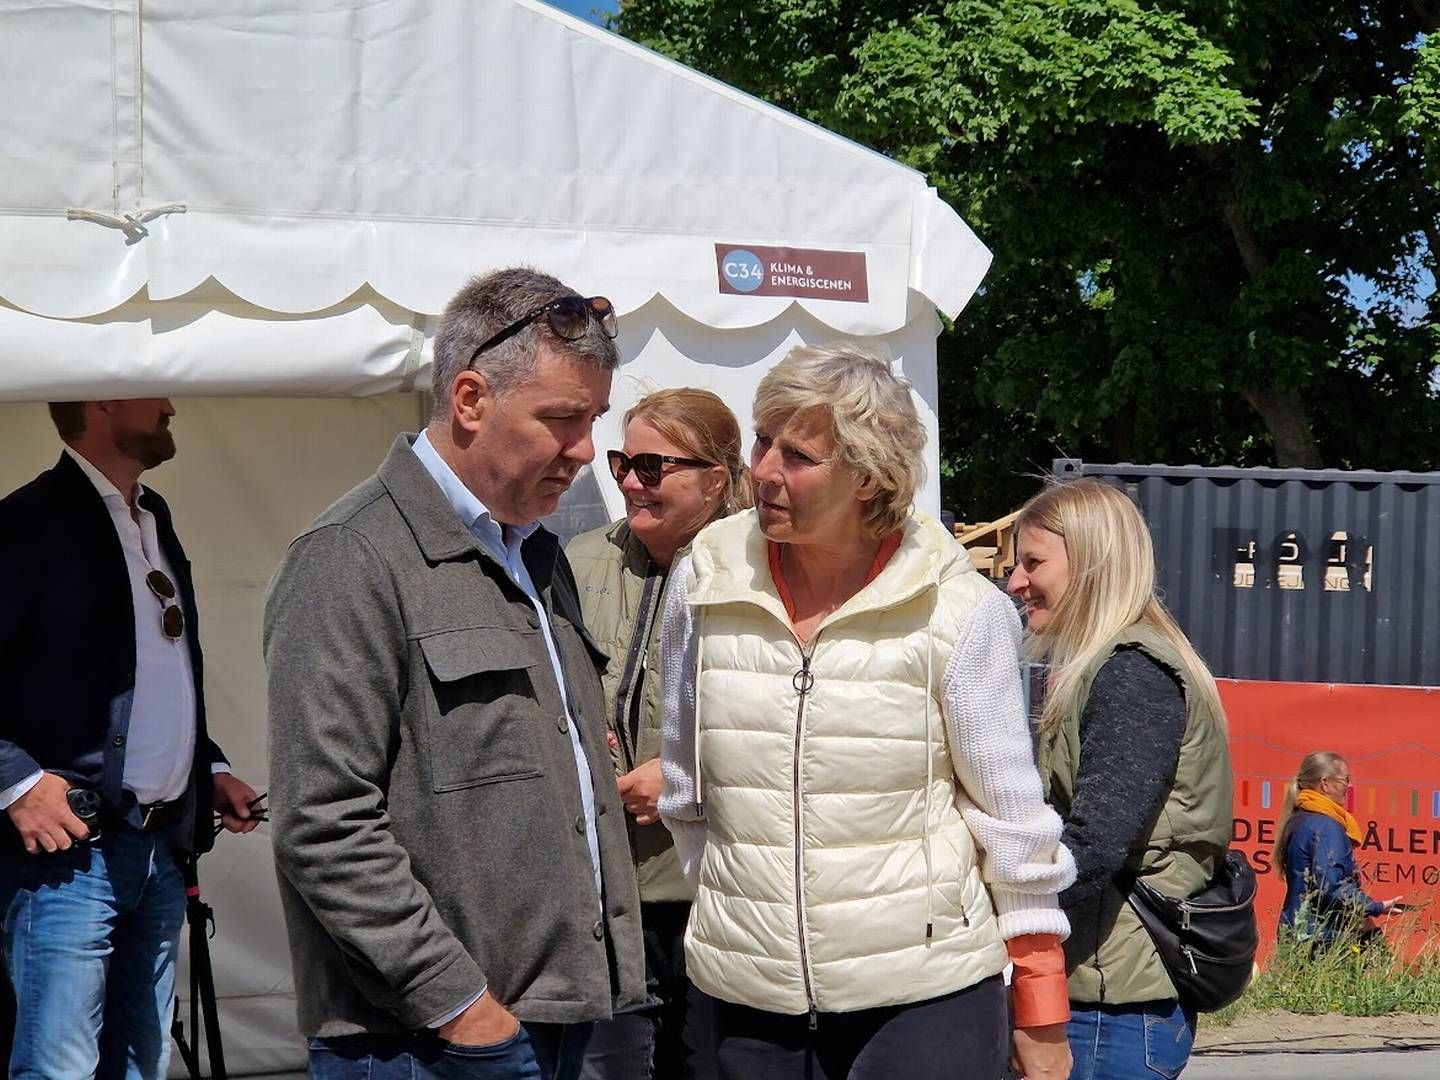 Lars Aagaard, klima og energiminister (M) sammen med tidligere konservativ toppolitiker Connie Hedegaard | Photo: Jakob Skouboe